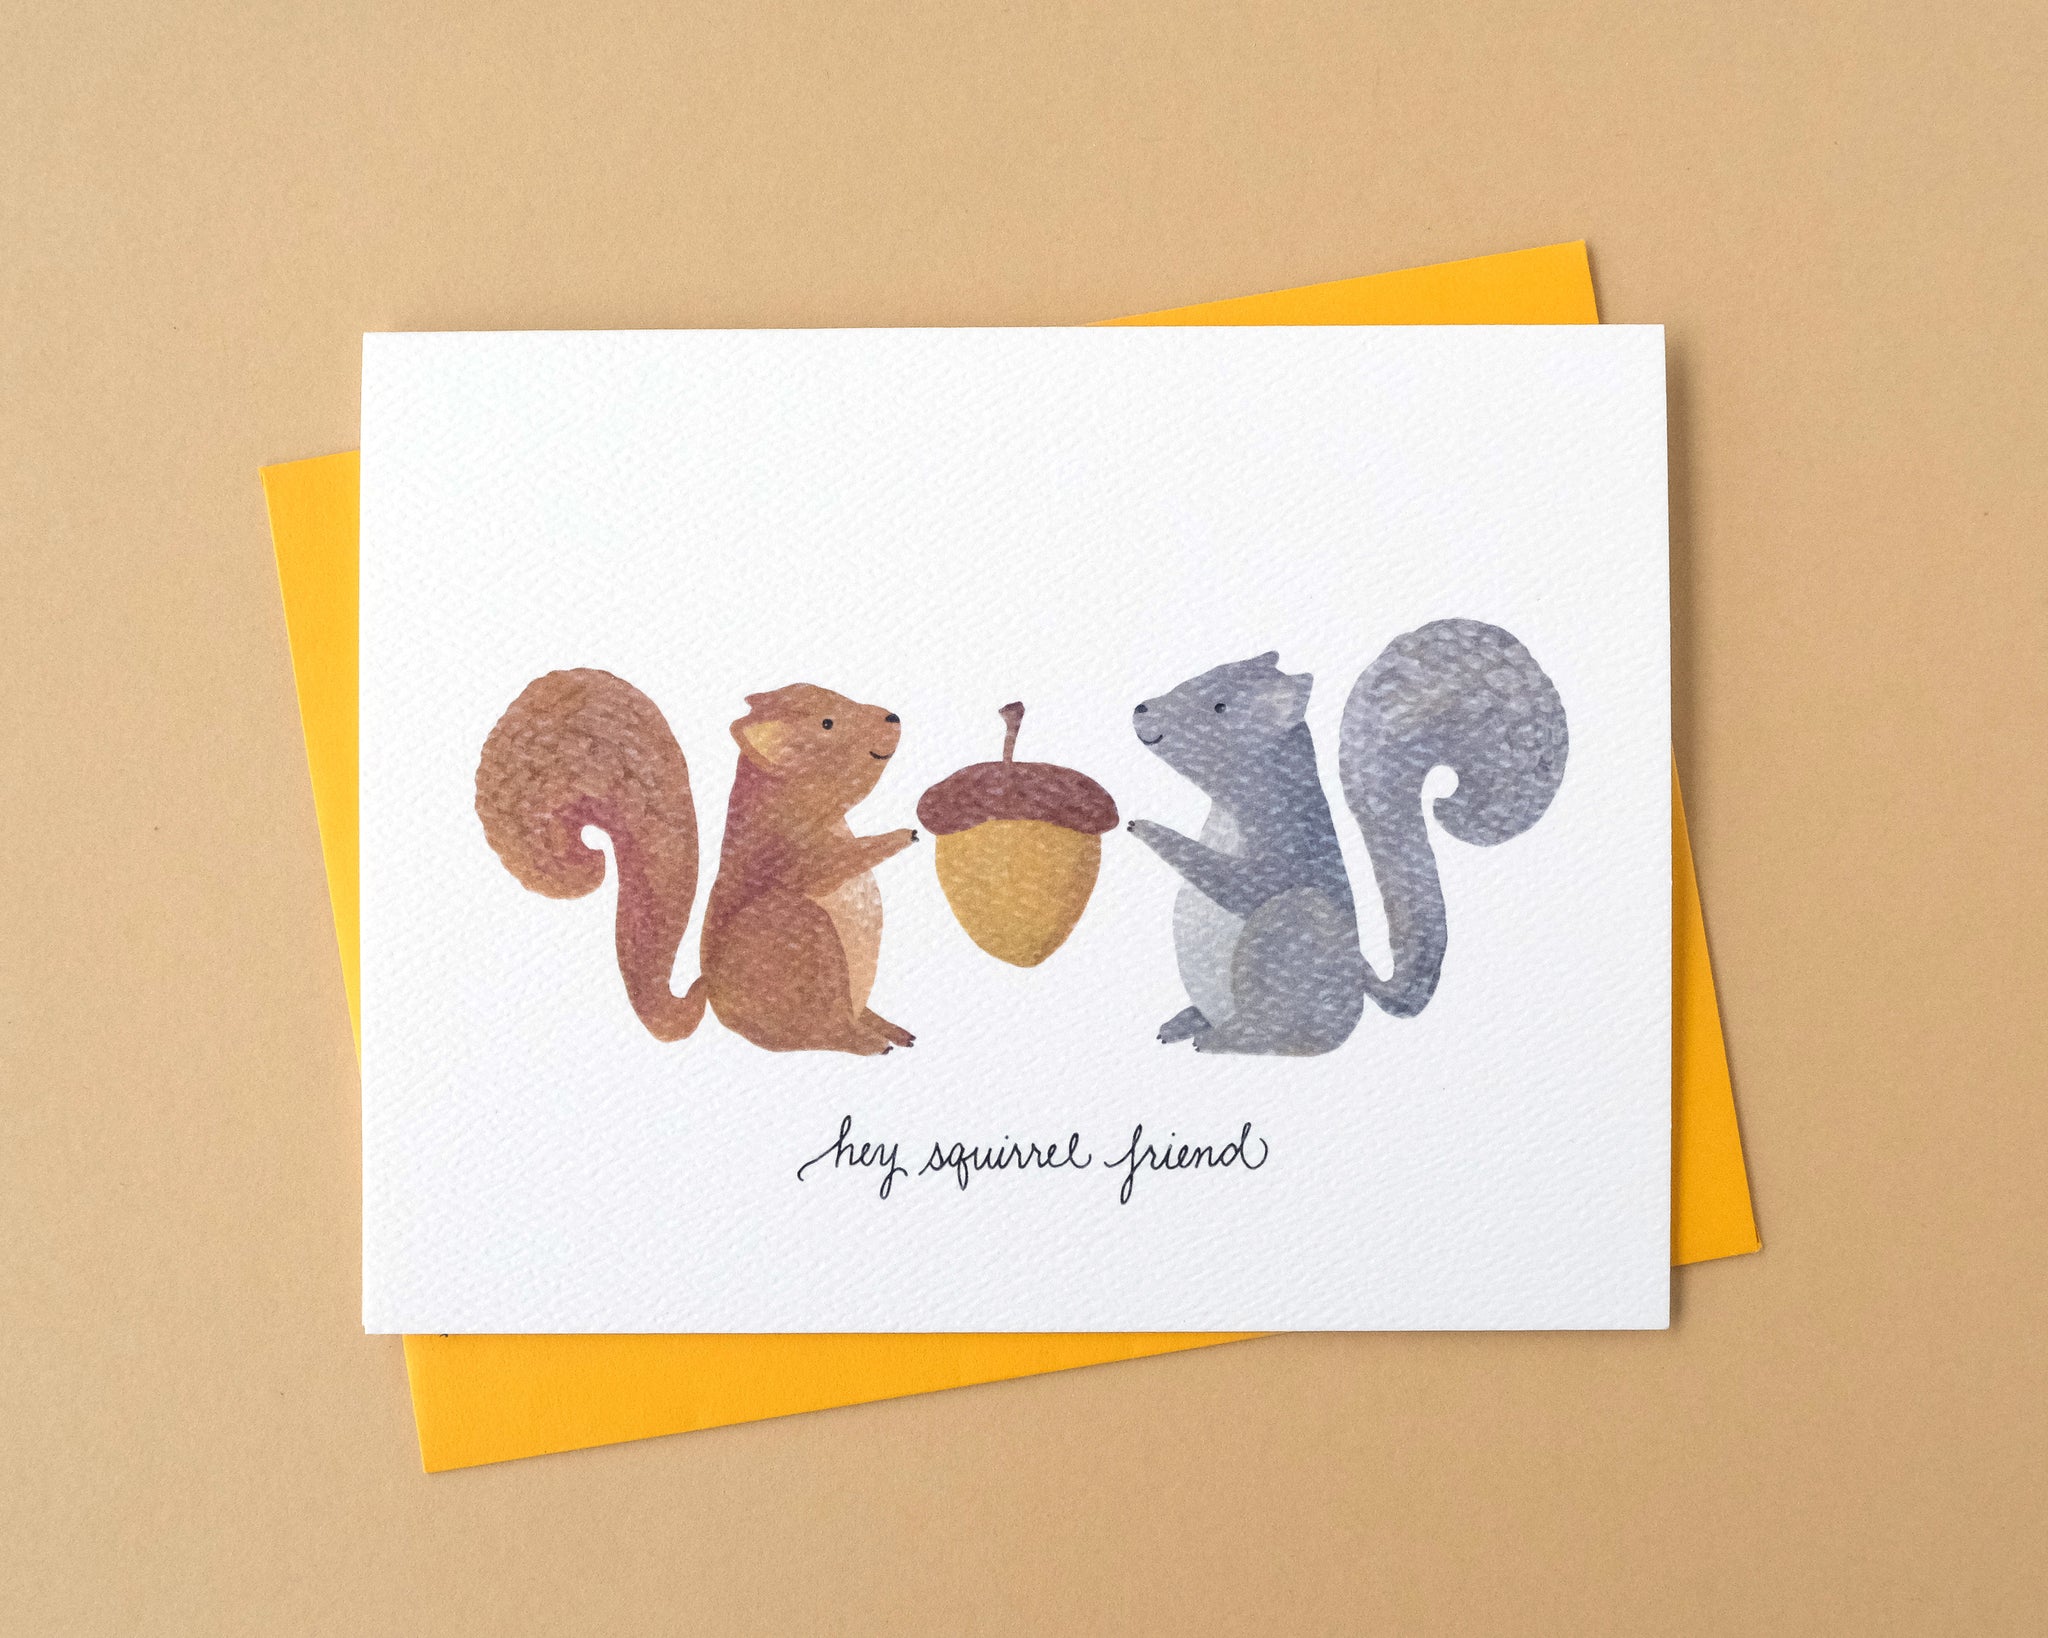 Hey Squirrel Friend Greeting Card